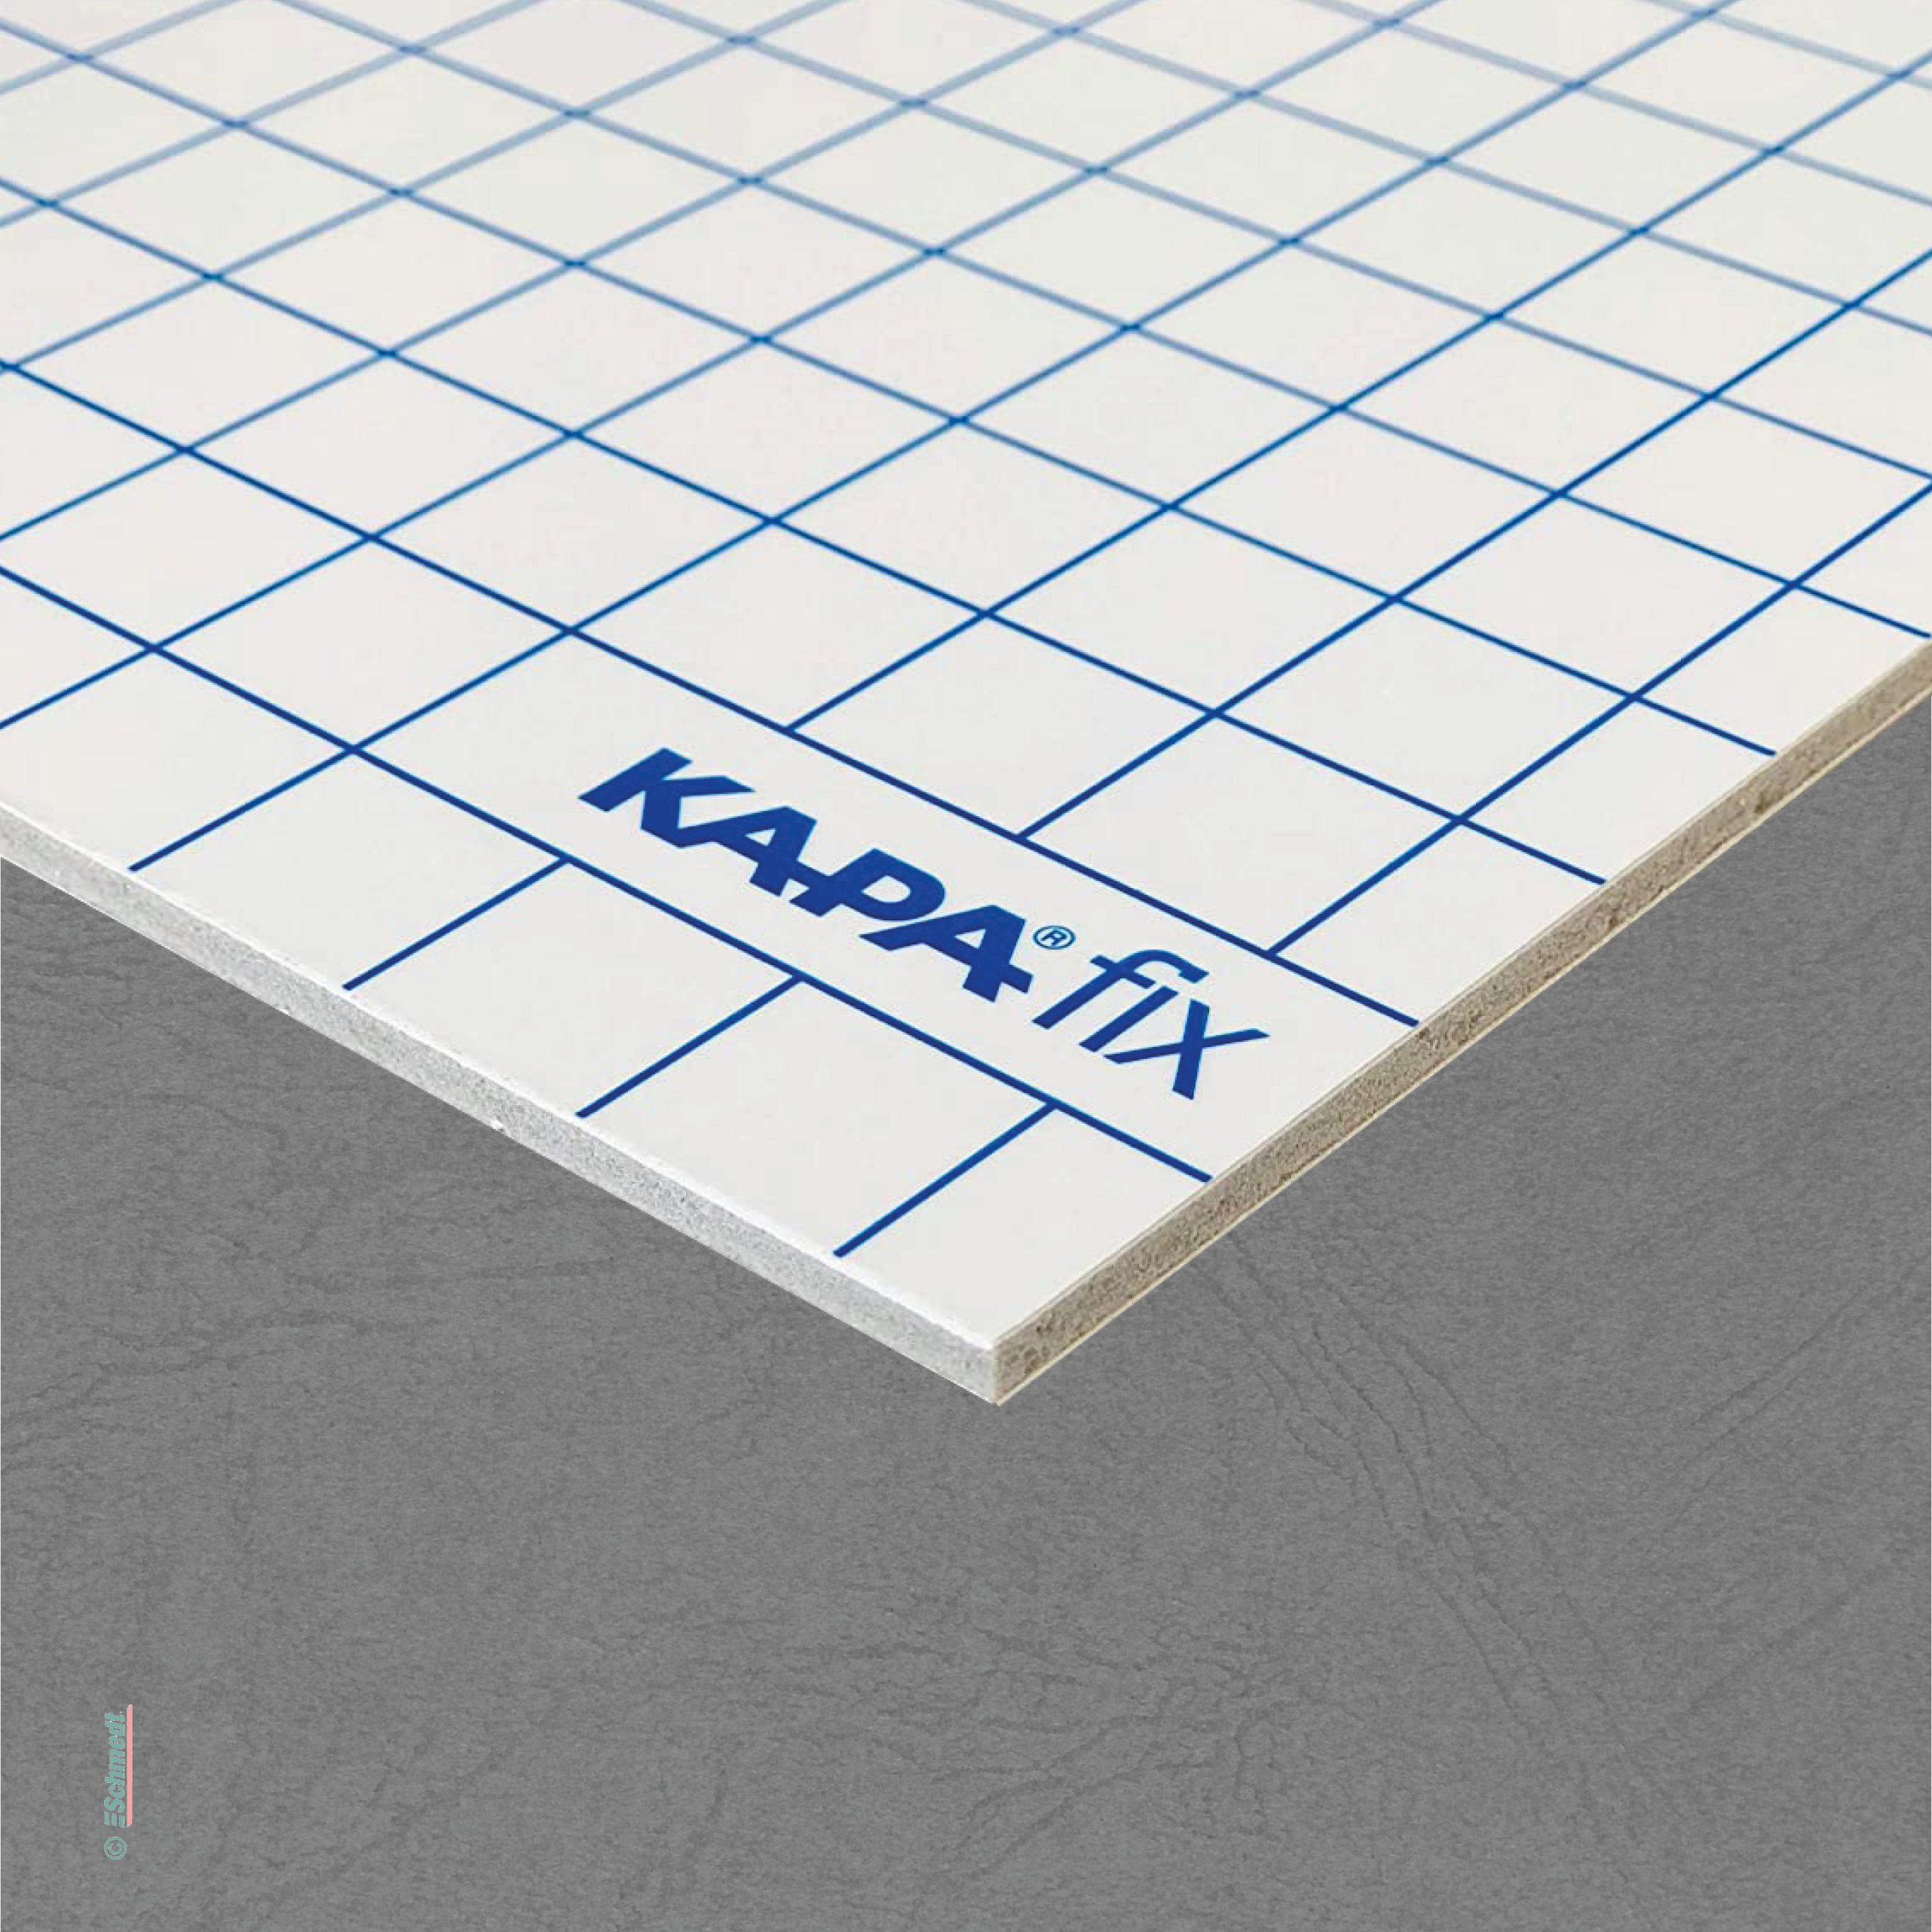 Leichtschaumplatten Kapa-Fix - beidseitig selbstklebend - Schnellkaschierplatten für Digitaldrucke, Fotos, Drucke, Pläne, nicht selbstkleben...